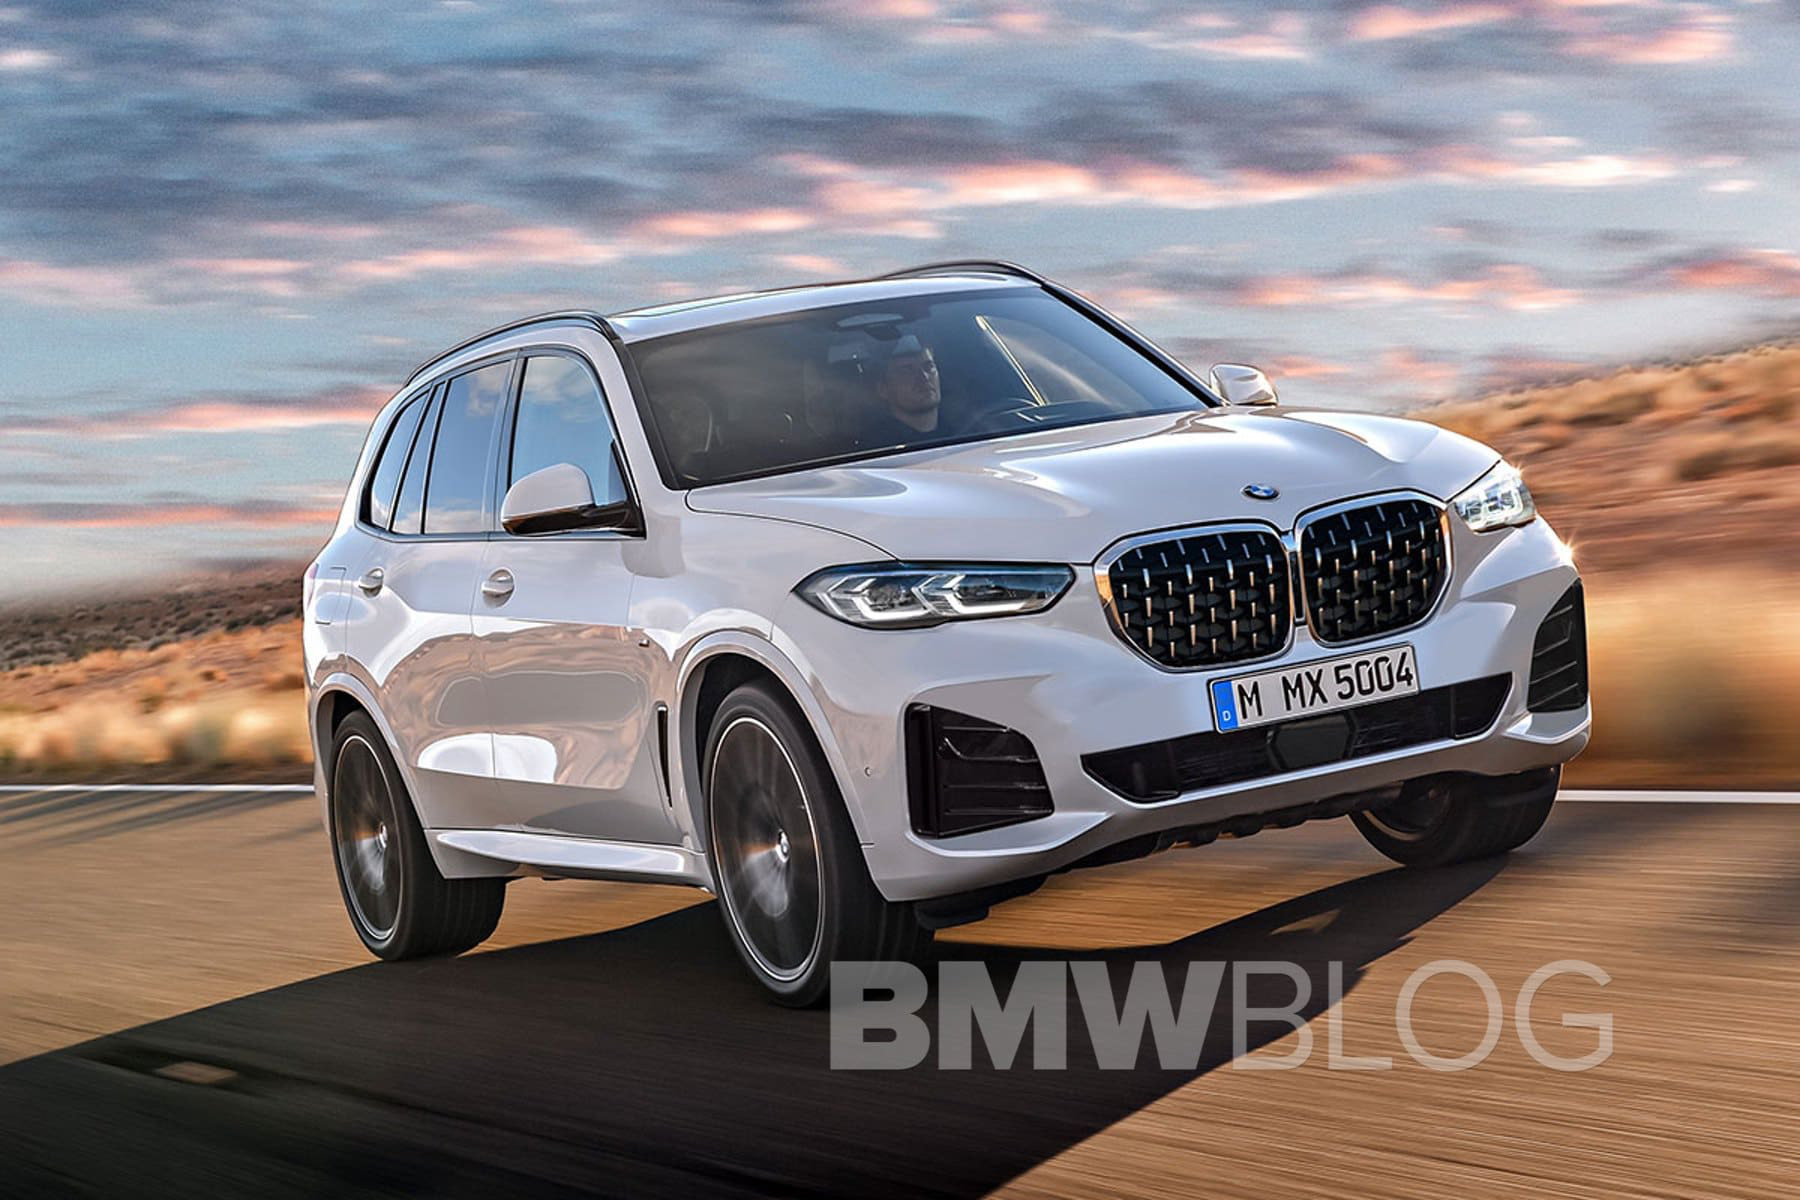 Xem trước BMW X5 2022 ra mắt ngay tháng sau: Mạnh hơn rõ rệt, thêm tuỳ chọn lai điện lúc giá xăng tăng cao